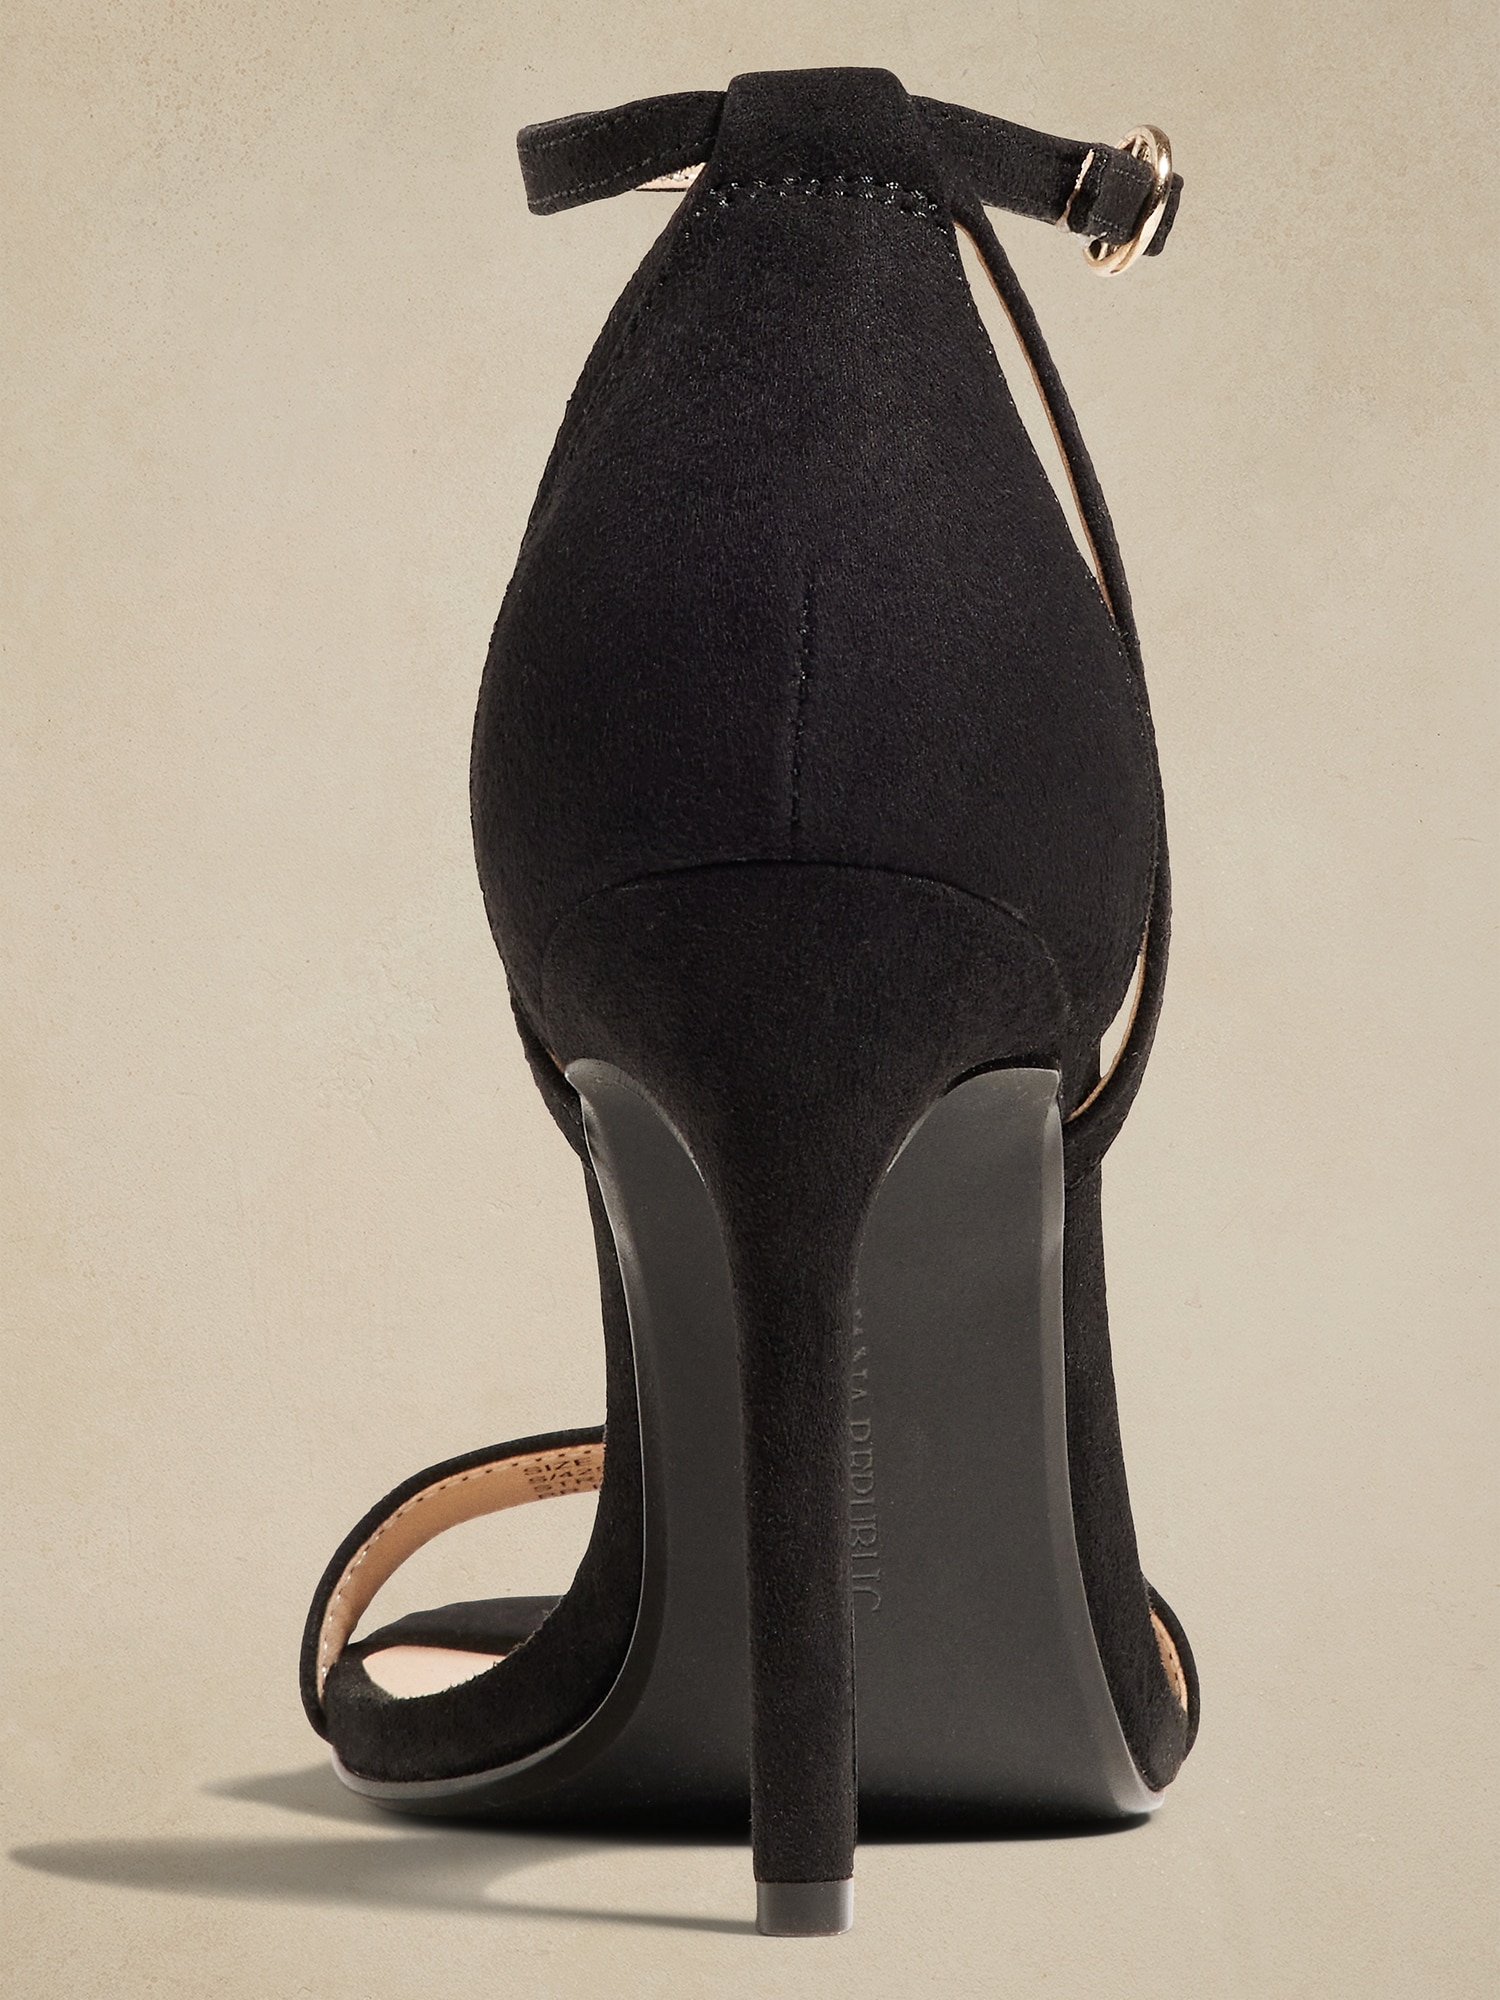 Pointed Heeled Sandals - Black - Ladies | H&M US